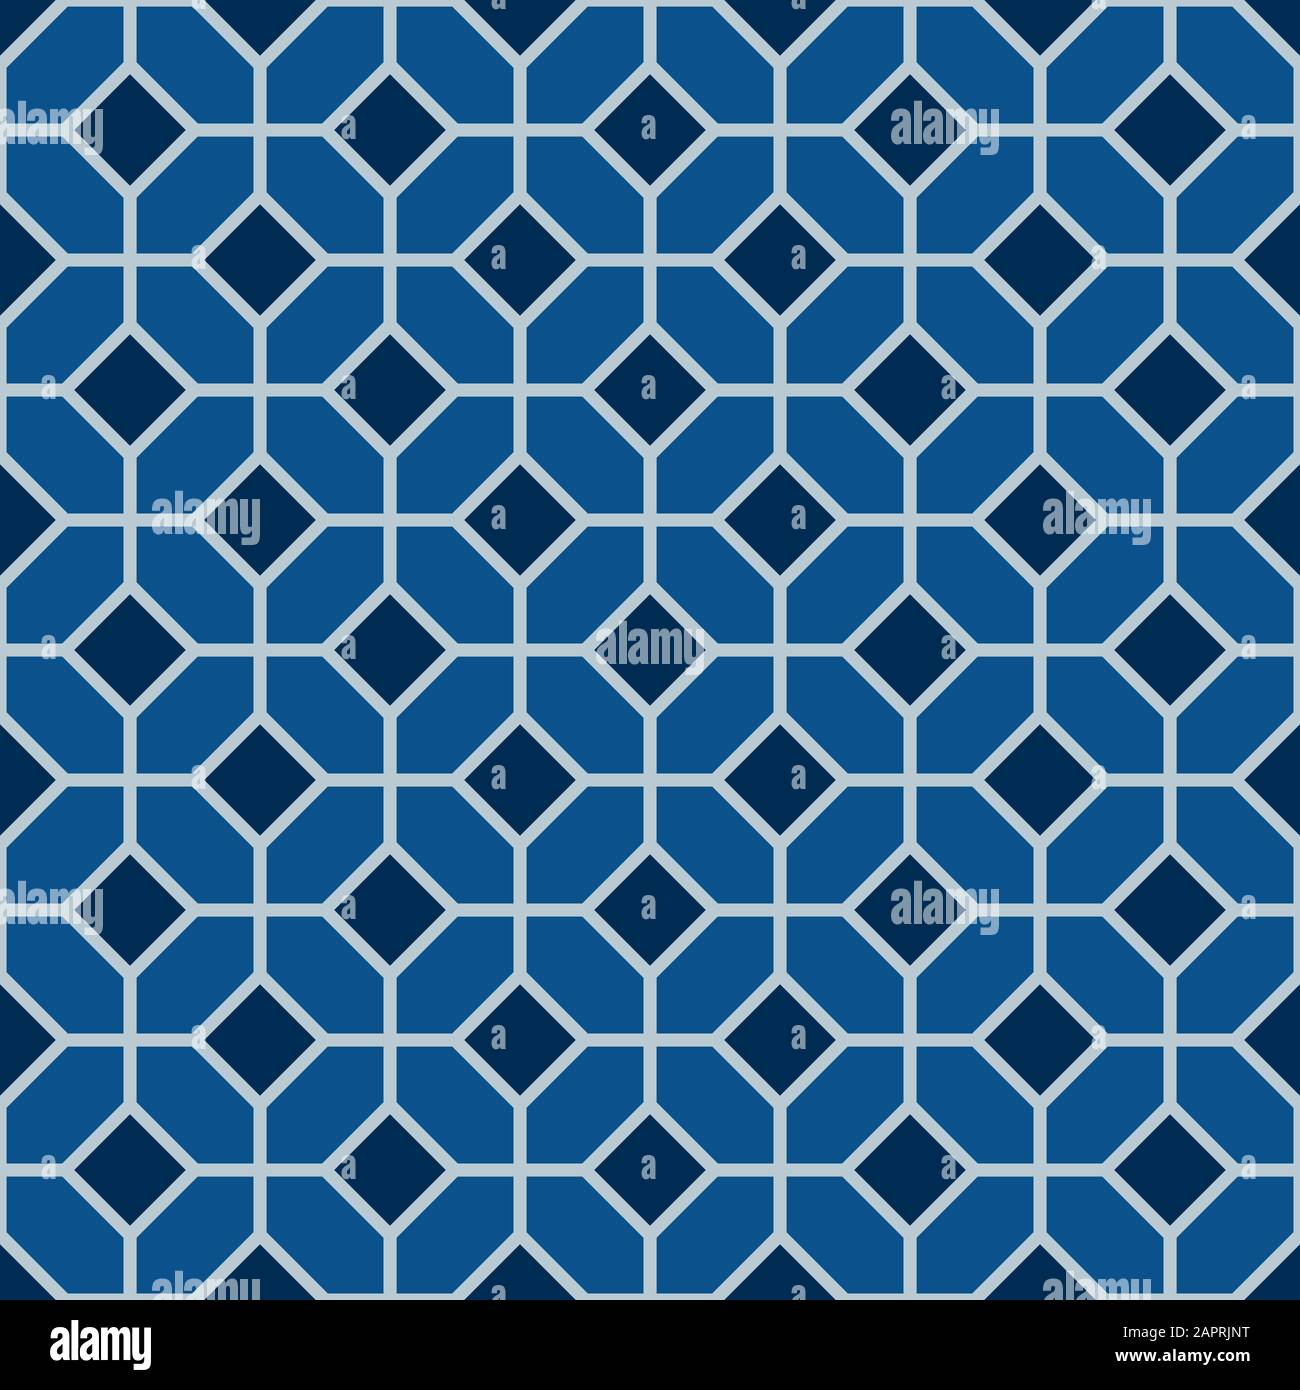 Classic blau verzierten Nahtlose Vektor Muster der maurischen Fliesen Dekorationen. Kachelbar Mosaik Hintergrund im islamischen Stil. Stock Vektor